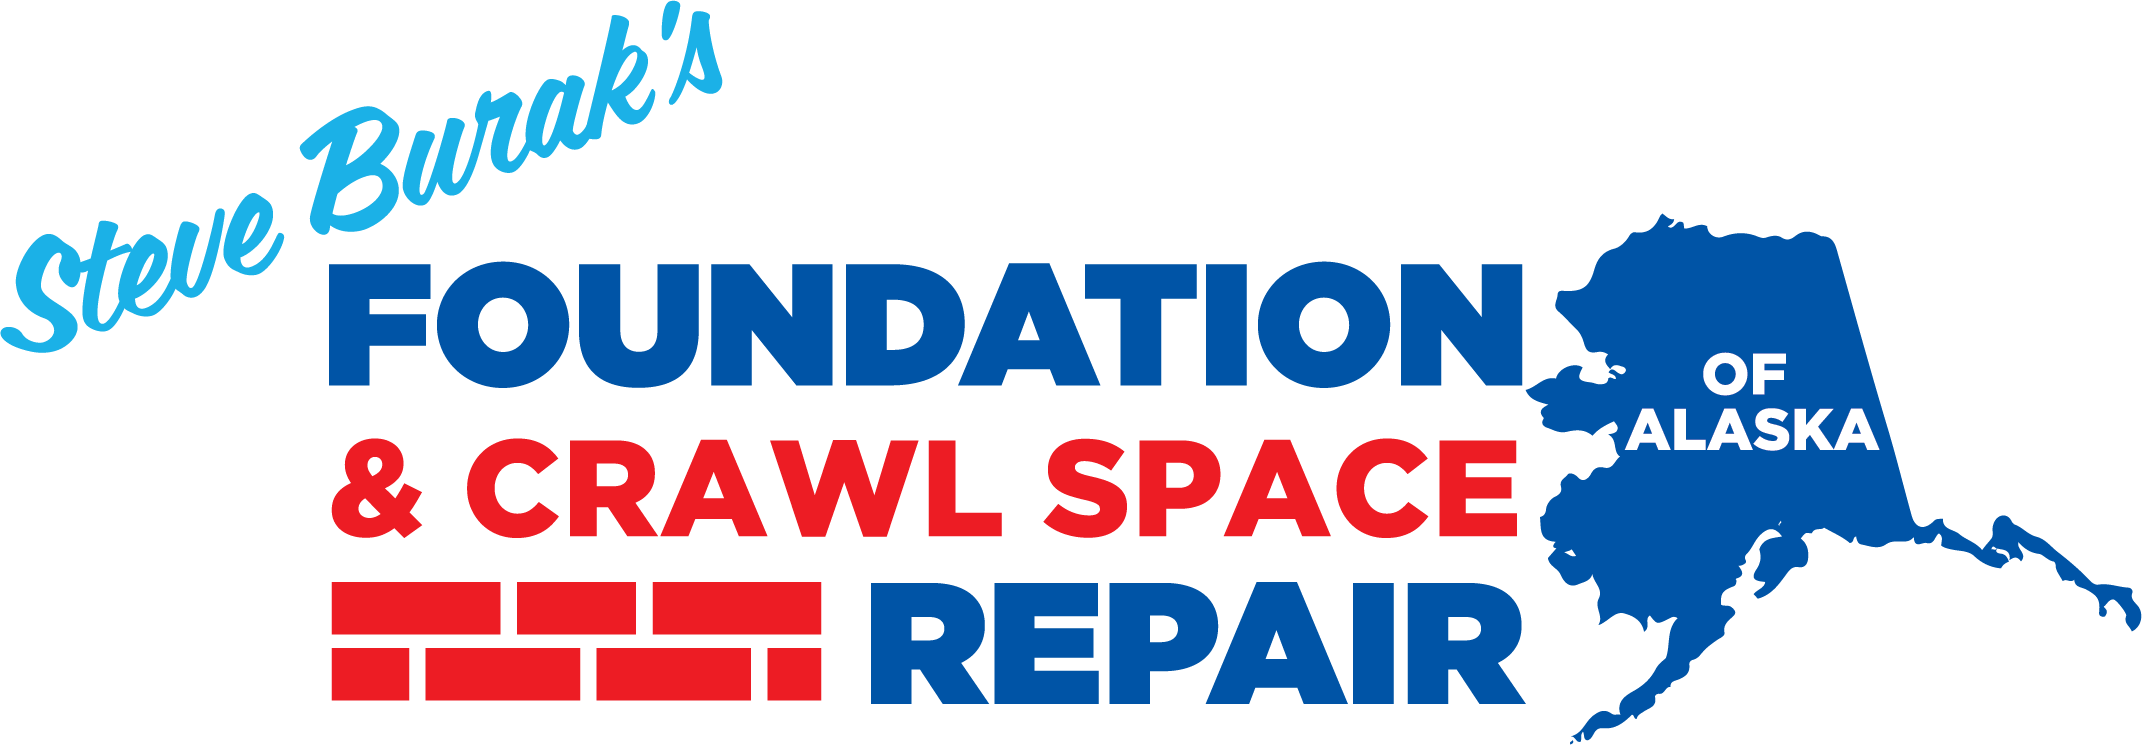 Foundation and Crawl Space Repair of Alaska Logo